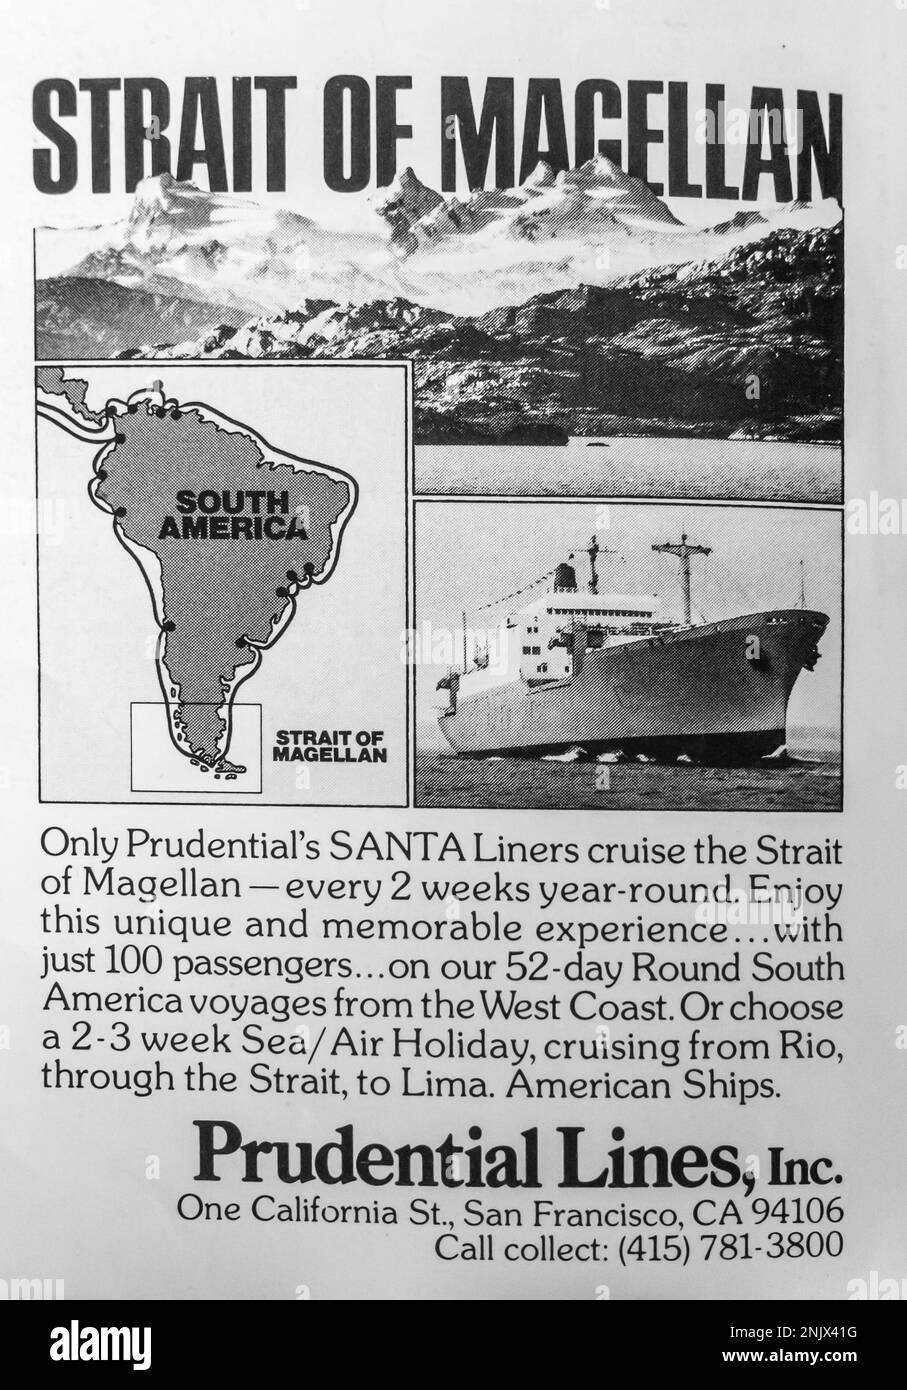 Prudential Liners Cruise - Strait of Magellan Travel Adventure Advertisement in einem NatGeo Magazin, Juni 1976 Stockfoto